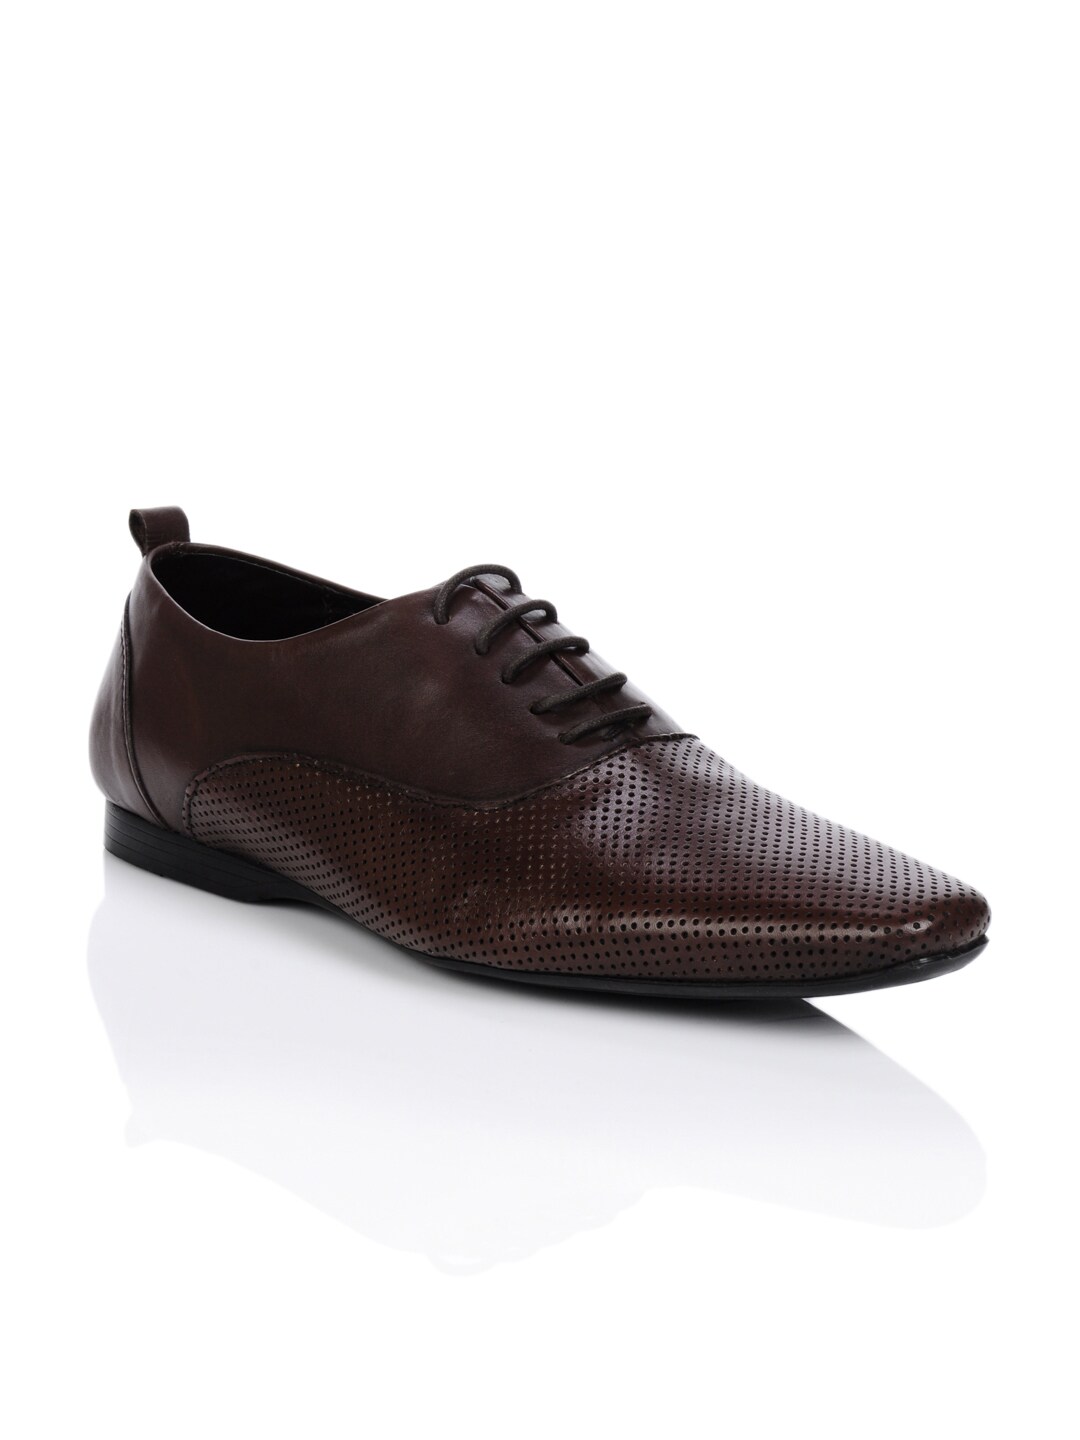 Franco Leone Men Brown Formal Shoes